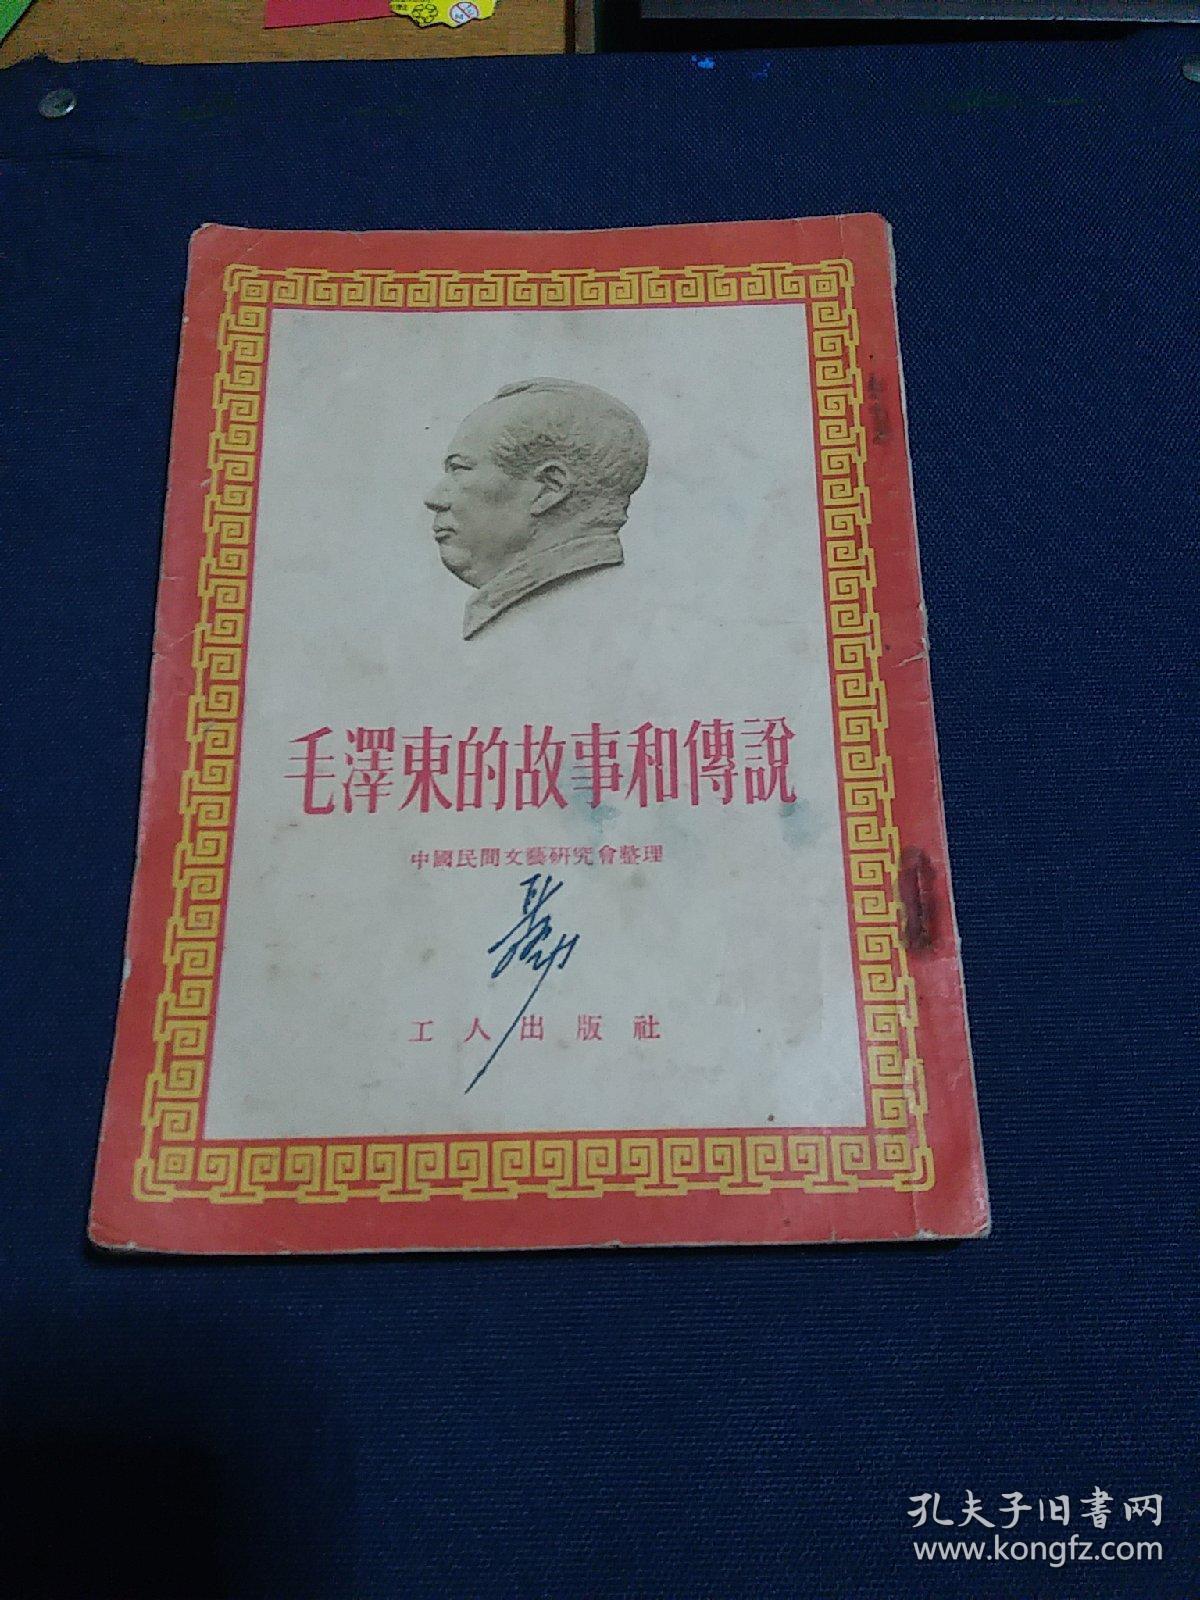 《毛泽东的故事和传说》1954年第一版有绘图版，早期关于毛主席的书籍！中国民间文艺研究会整理